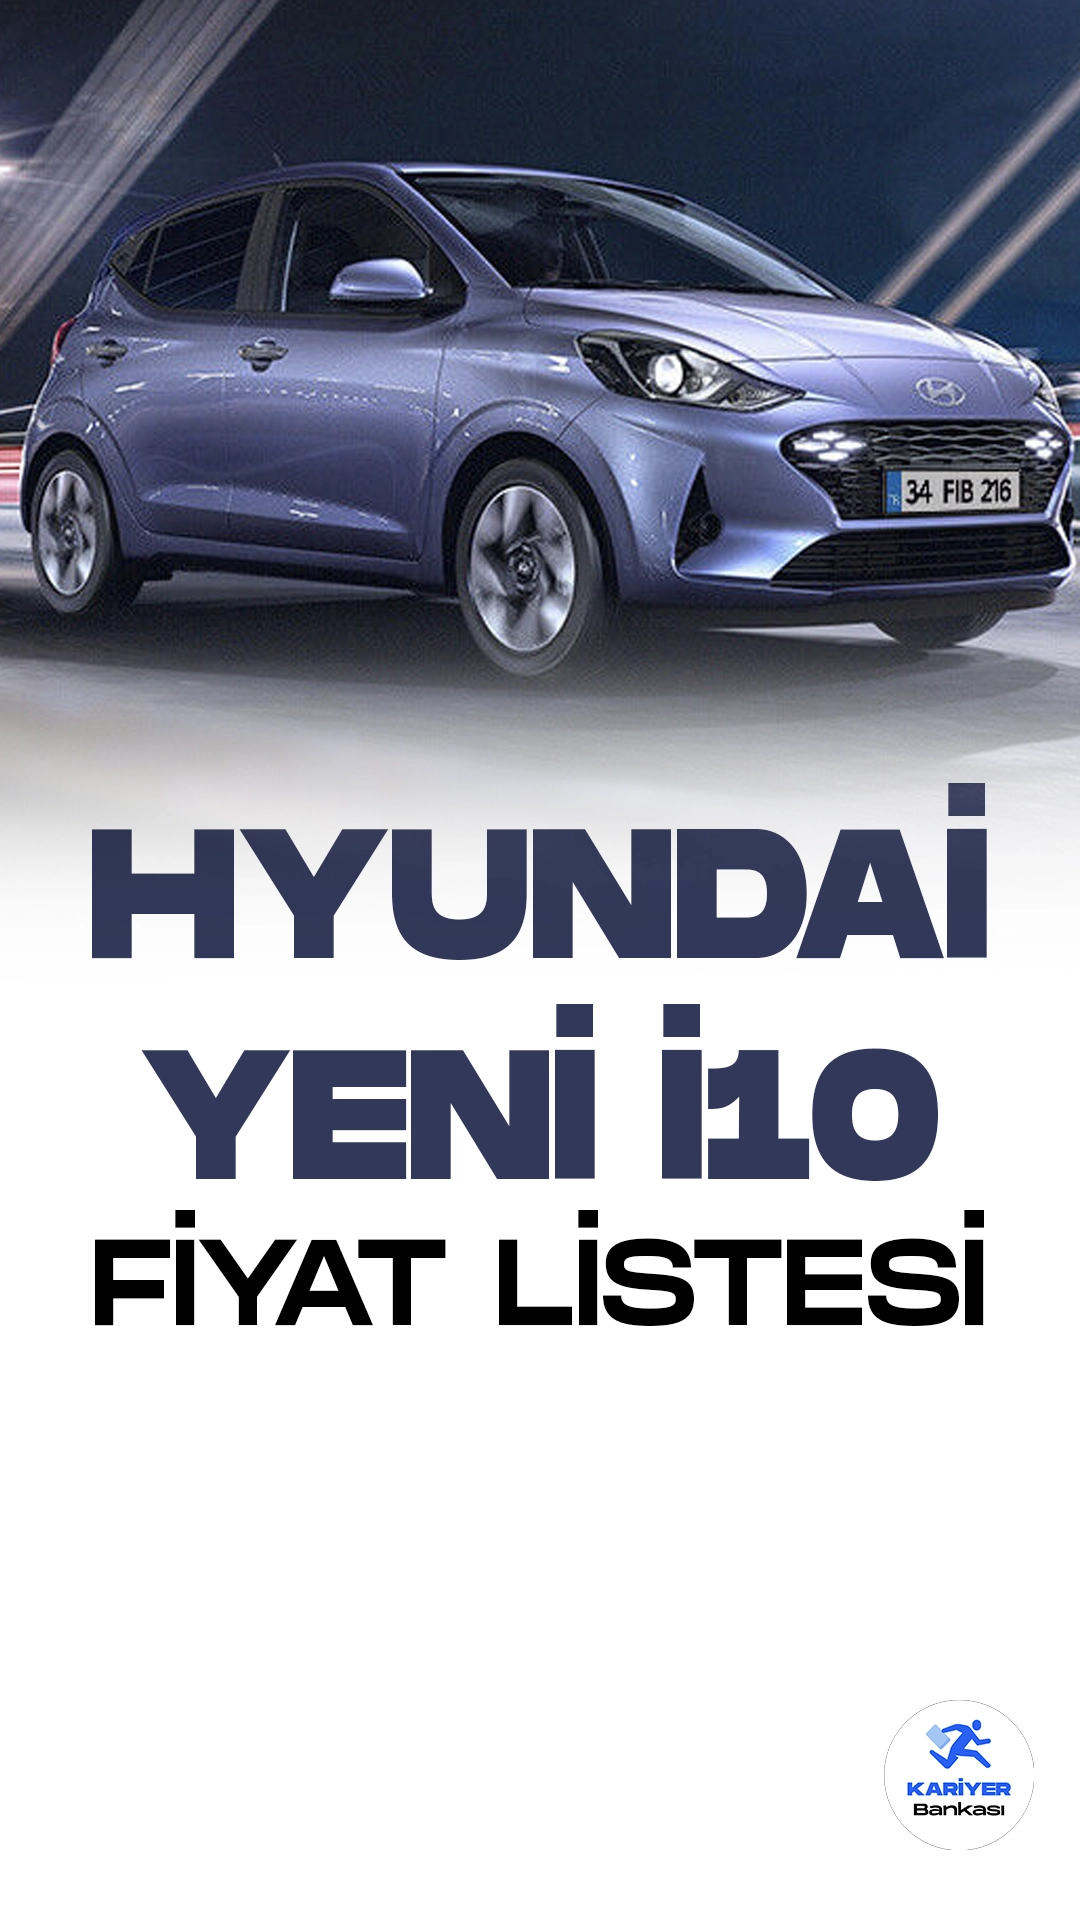 Hyundai i10 Temmuz Fiyat Listesi Yayımlandı. Hyundai, popüler kompakt otomobili i10'un yeni modelini tanıttı. Yenilenen i10, şık ve modern tasarımıyla dikkat çekiyor. Ön bölümdeki yeni ızgara ve farlar, araca dinamik bir görünüm kazandırıyor. İç mekanda ise kaliteli malzemeler ve ergonomik düzenlemeler kullanılmış. Yenilenen multimedya sistemi ve dokunmatik ekran, sürücüye gelişmiş bir kullanıcı deneyimi sunuyor. Hyundai, i10'u güvenlik konusunda da ön plana çıkarıyor. Yeni model, çarpışma önleme sistemi, şerit takip asistanı ve geri görüş kamerası gibi bir dizi güvenlik özelliğiyle donatılmış. Yenilenen Hyundai i10, kompakt otomobil segmentinde iddialı bir seçenek olarak öne çıkıyor.